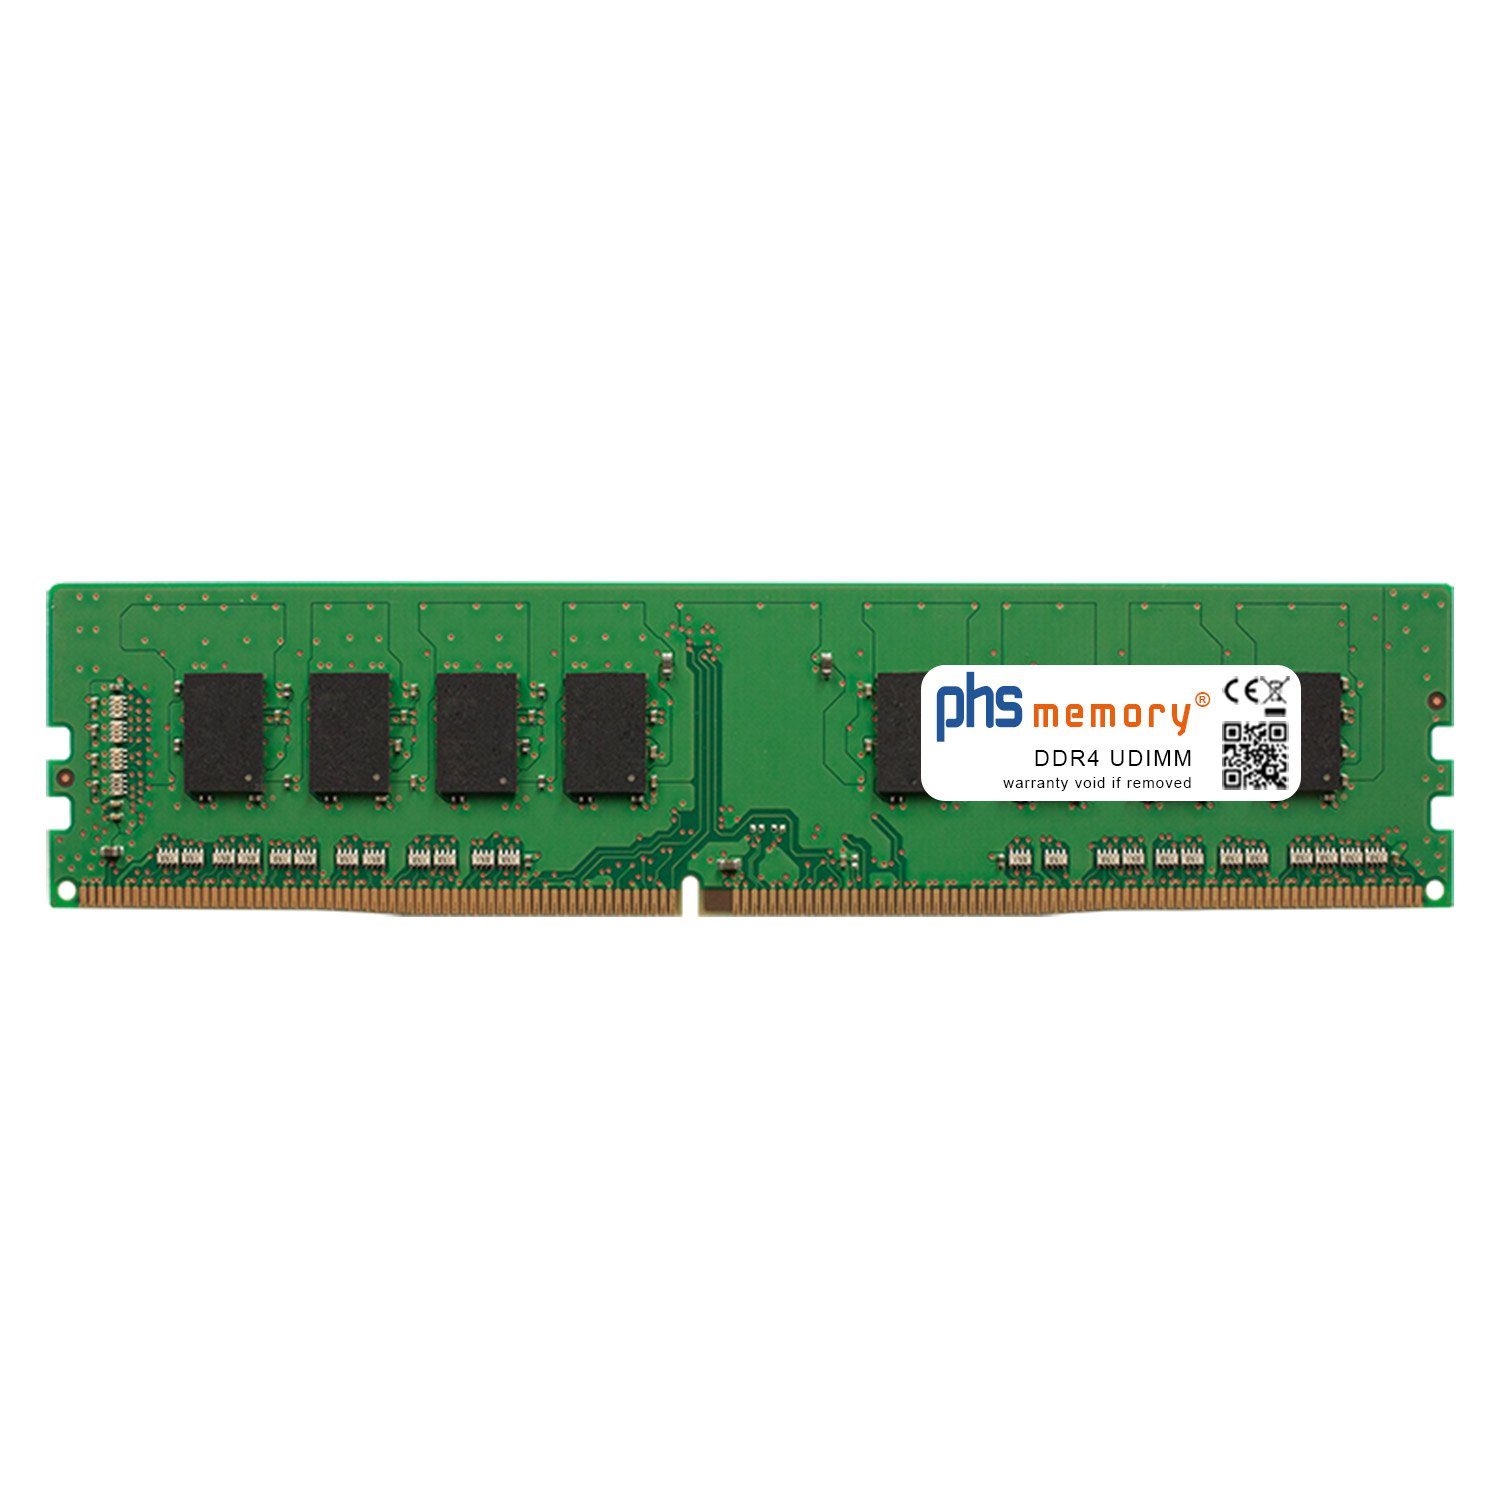 PHS-memory RAM für NBB Arbeiter NBB01090 Office-PC Arbeitsspeicher